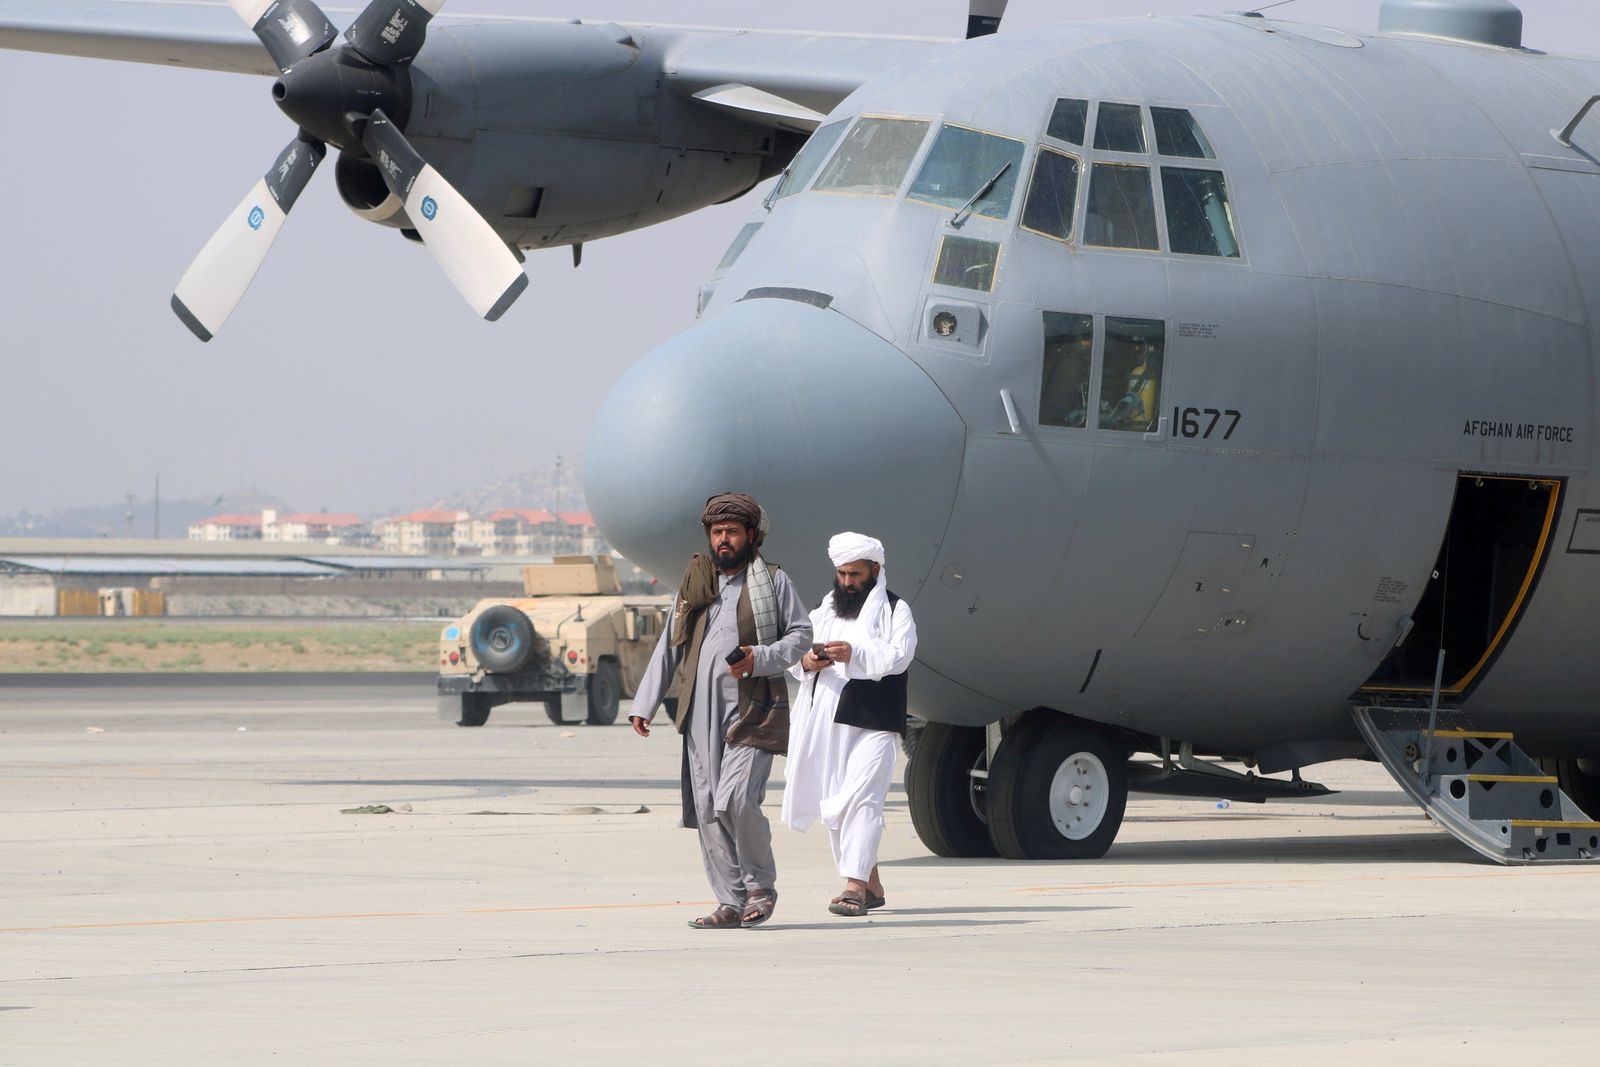 عنصران من قوات طالبان يسيران أمام طائرة عسكرية غداة إتمام انسحاب القوات الأميركية من مطار كابول، 31 أغسطس 2021 - REUTERS